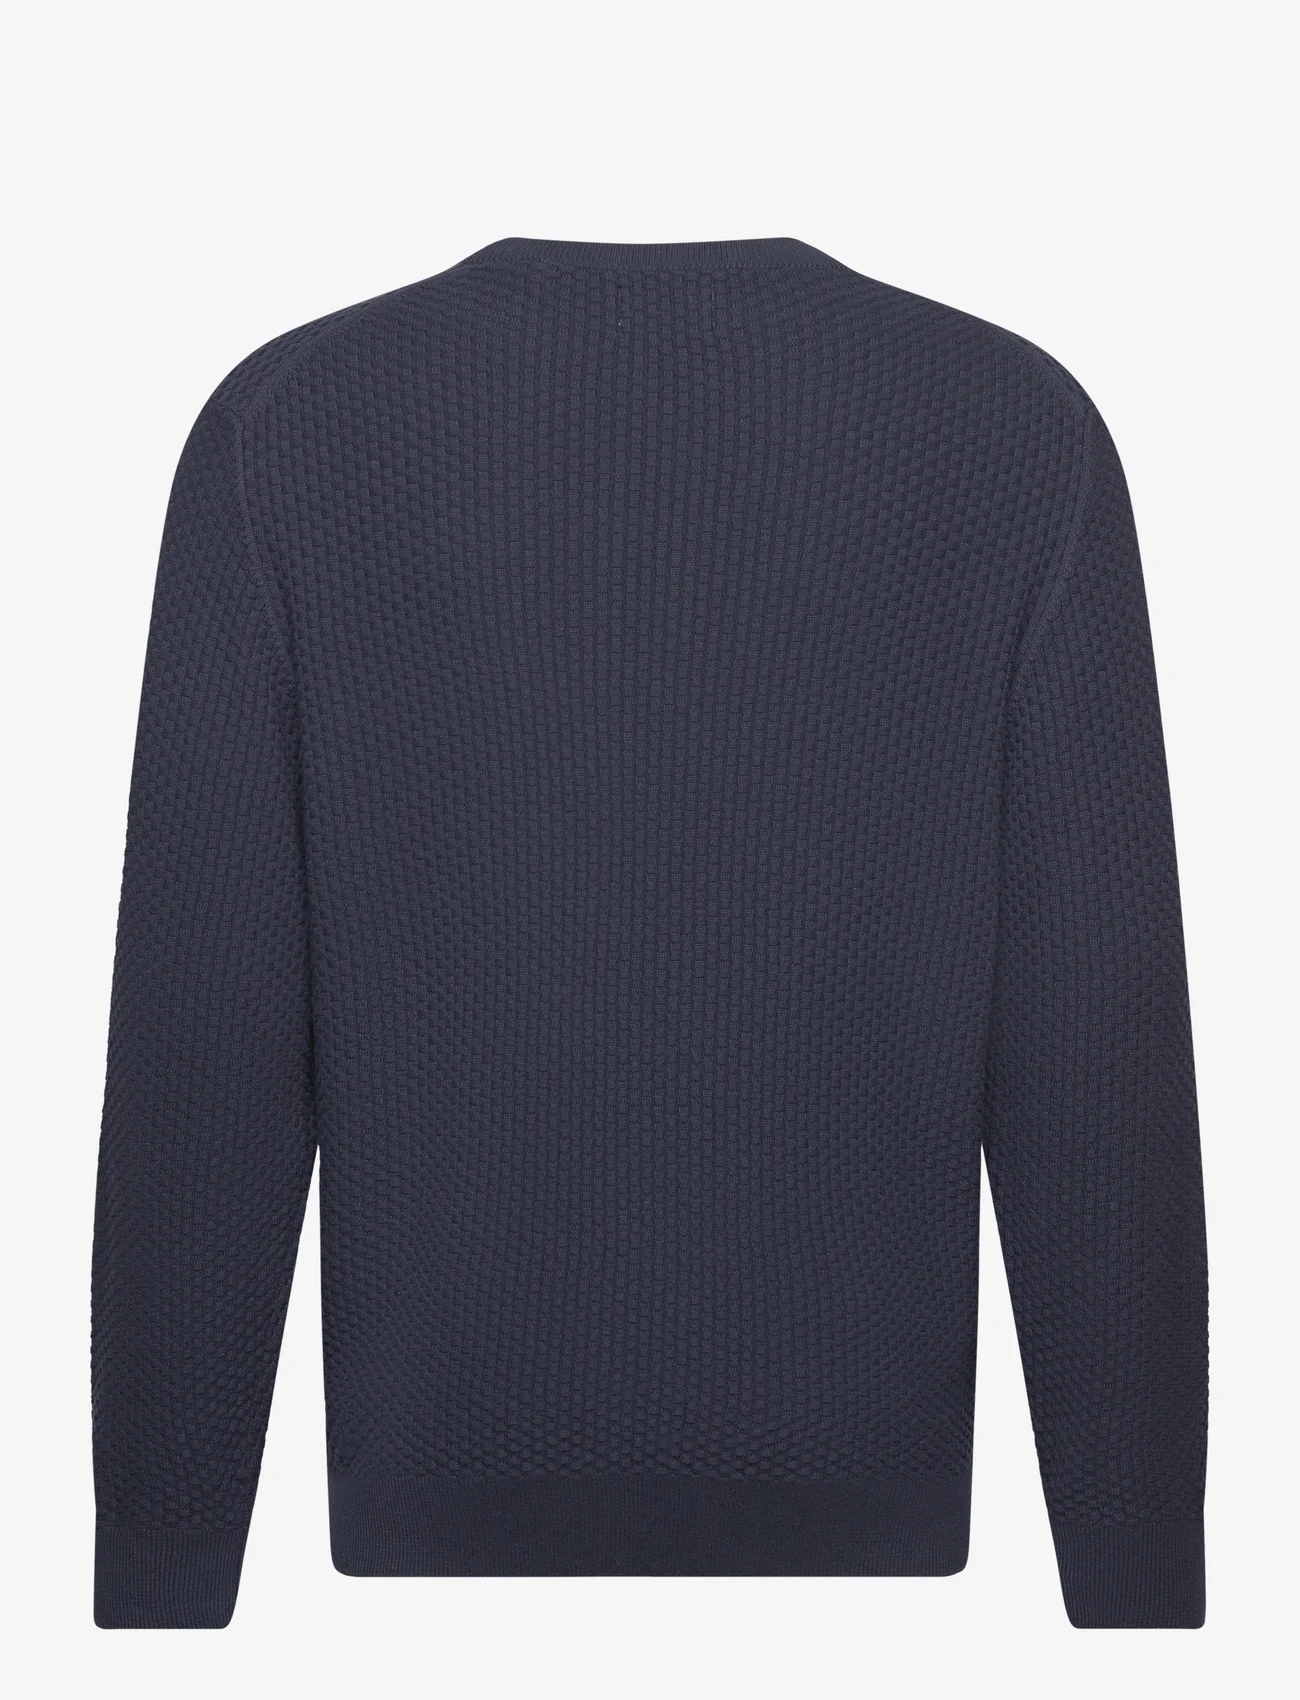 GANT - COTTON TEXTURE C-NECK - knitted round necks - evening blue - 1